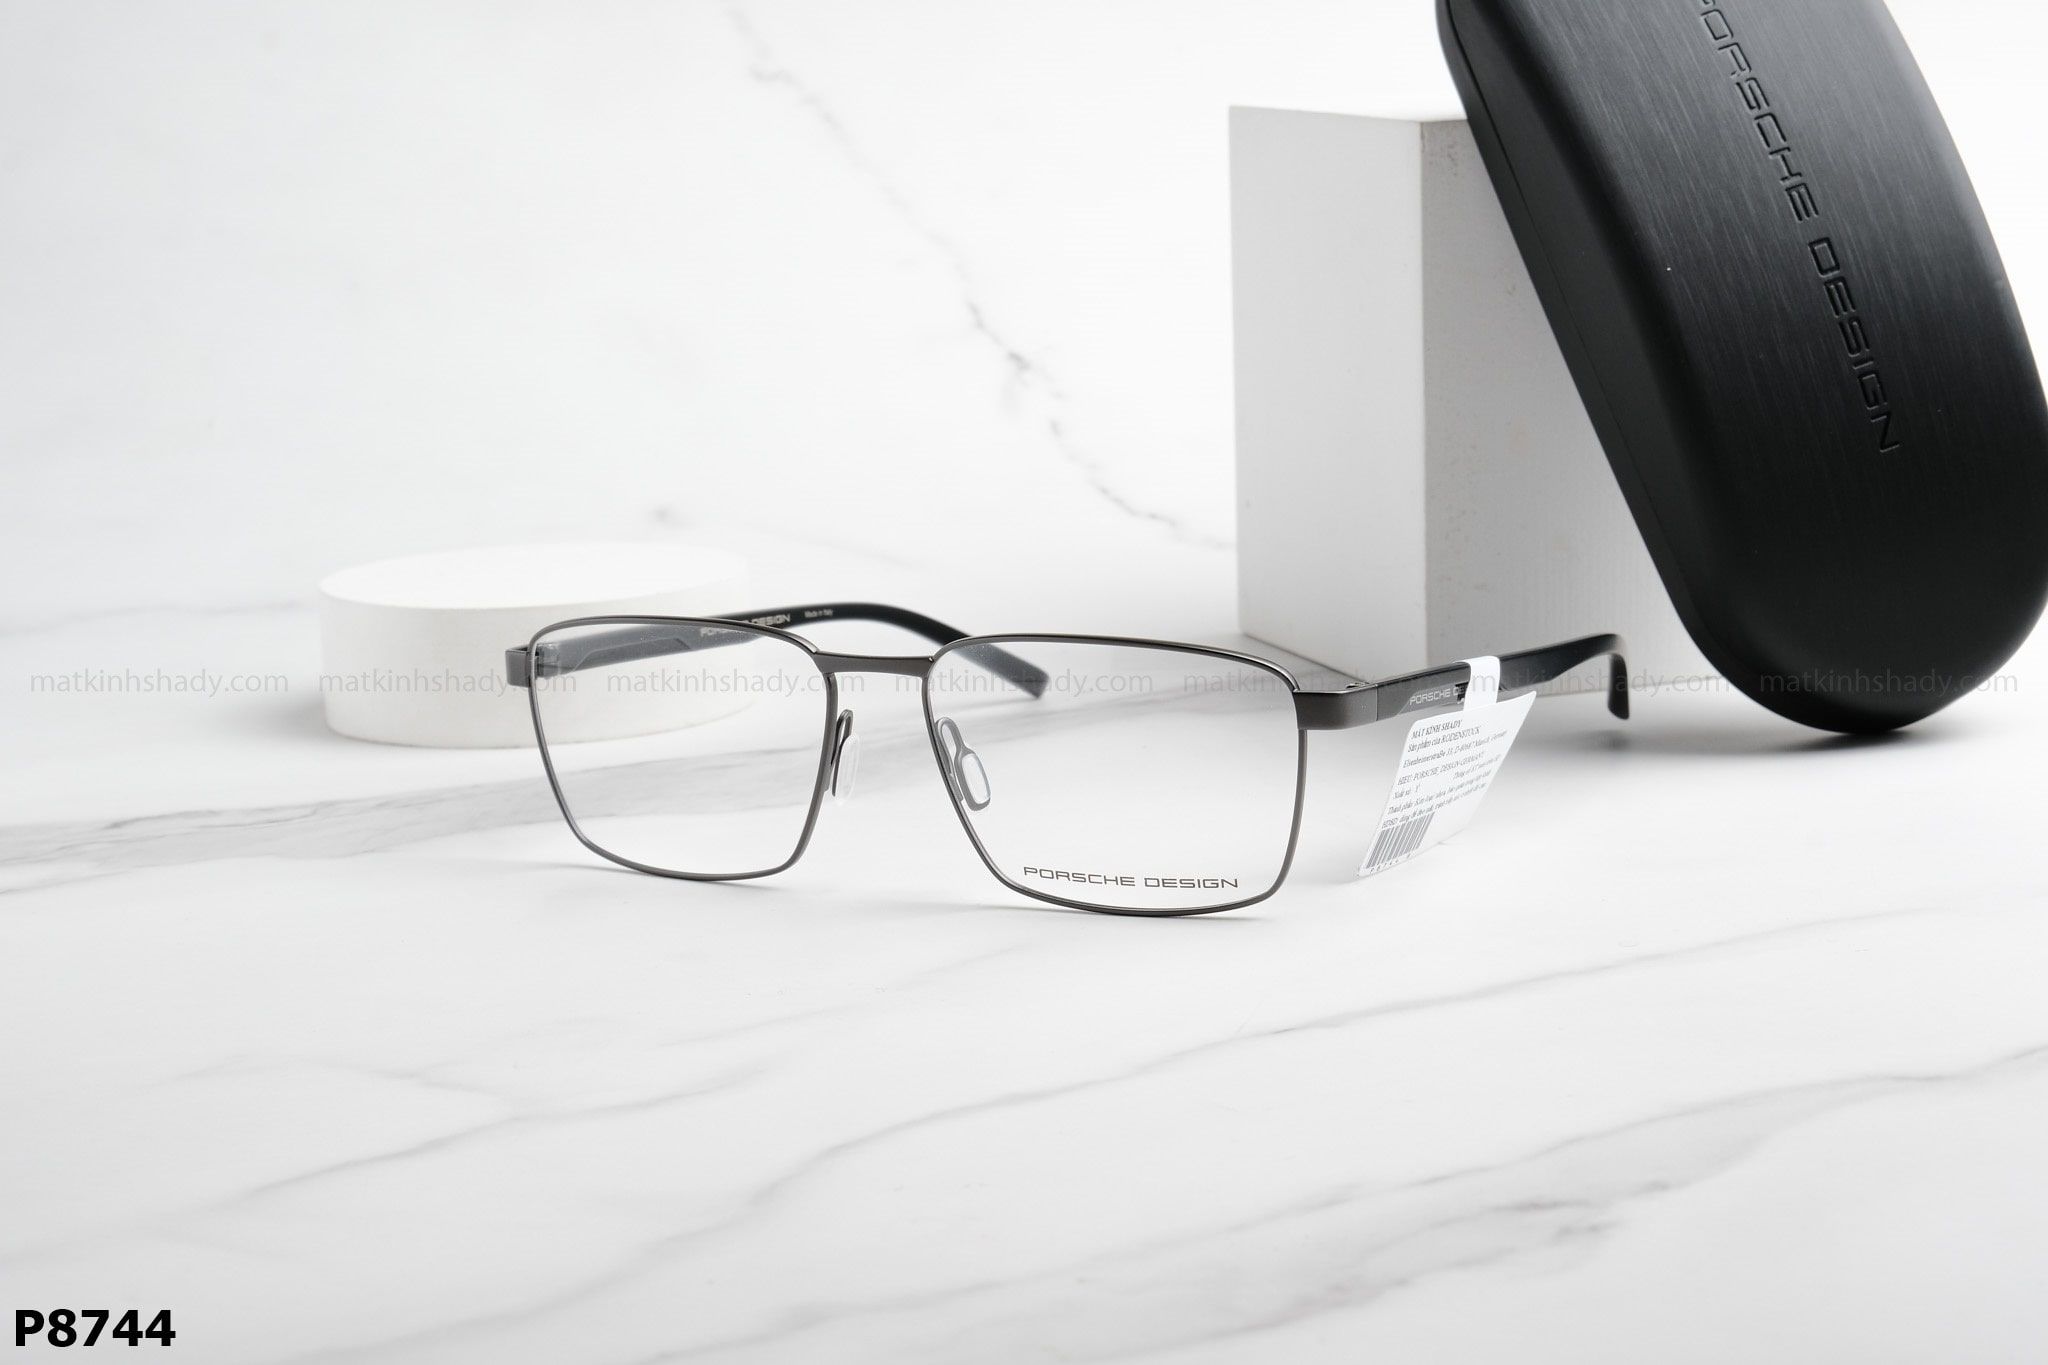  Porsche Design Eyewear - Glasses - P8744 